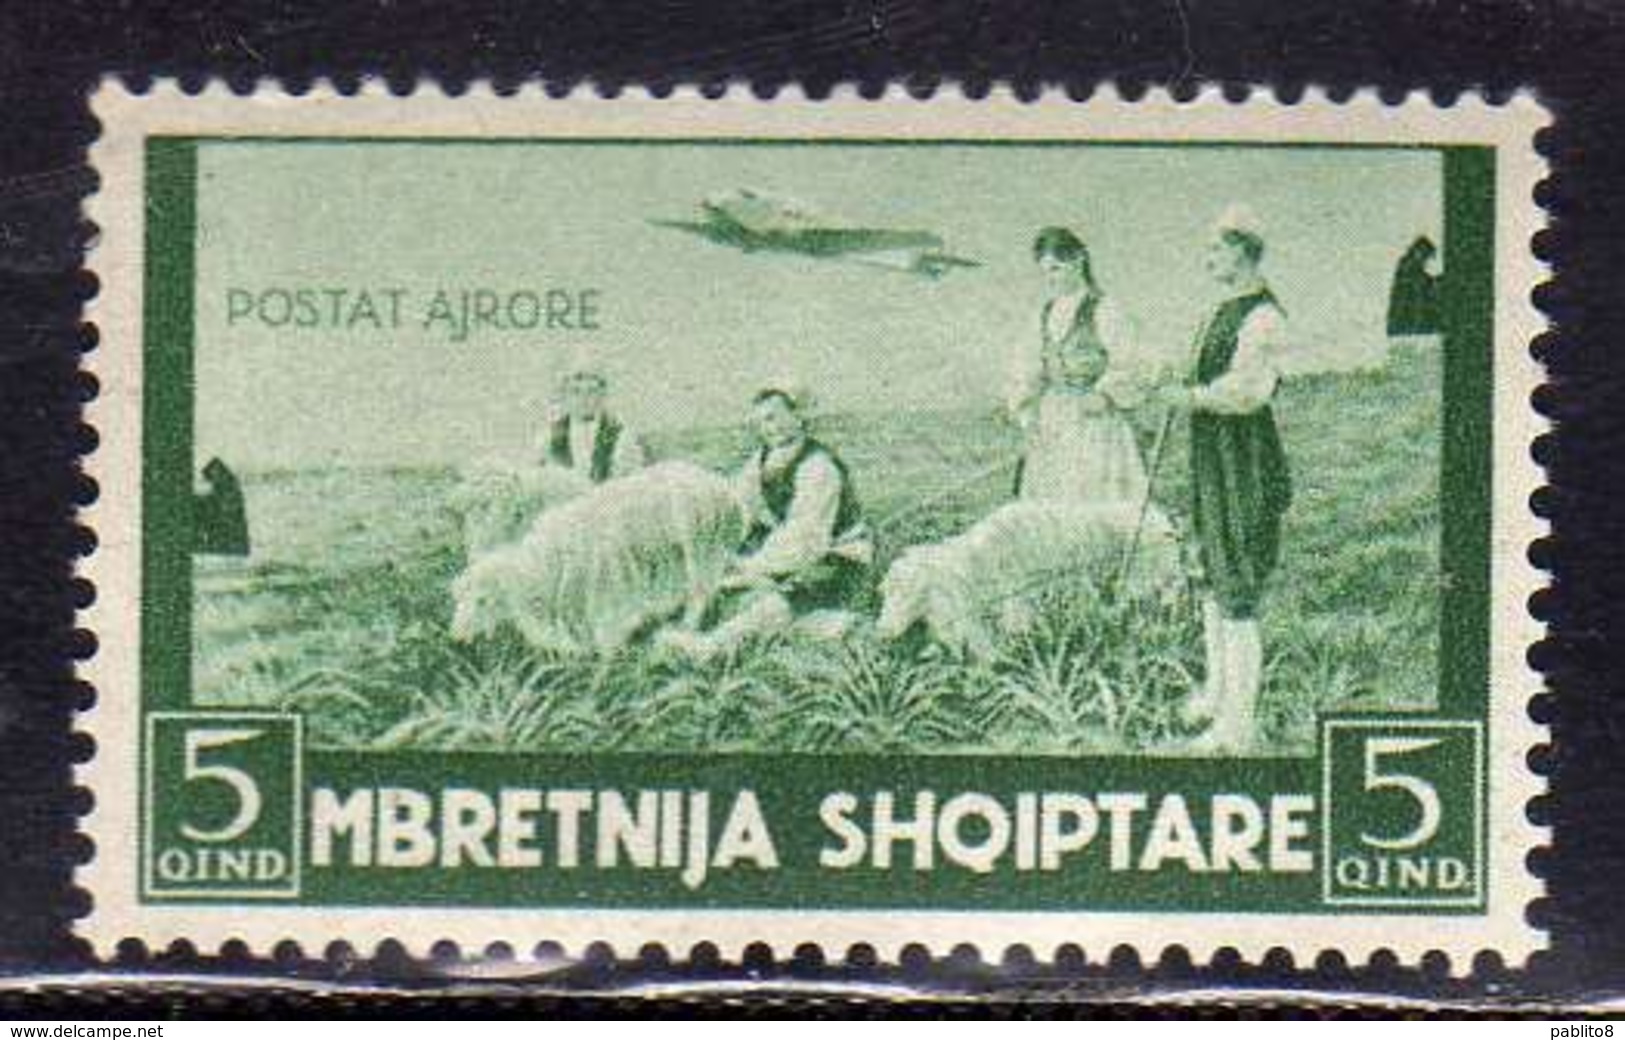 ALBANIA 1940 POSTA AEREA AIR MAIL PASTORI CON PECORE SHEPHERDS WITH SHEEP 5q MNH - Albania